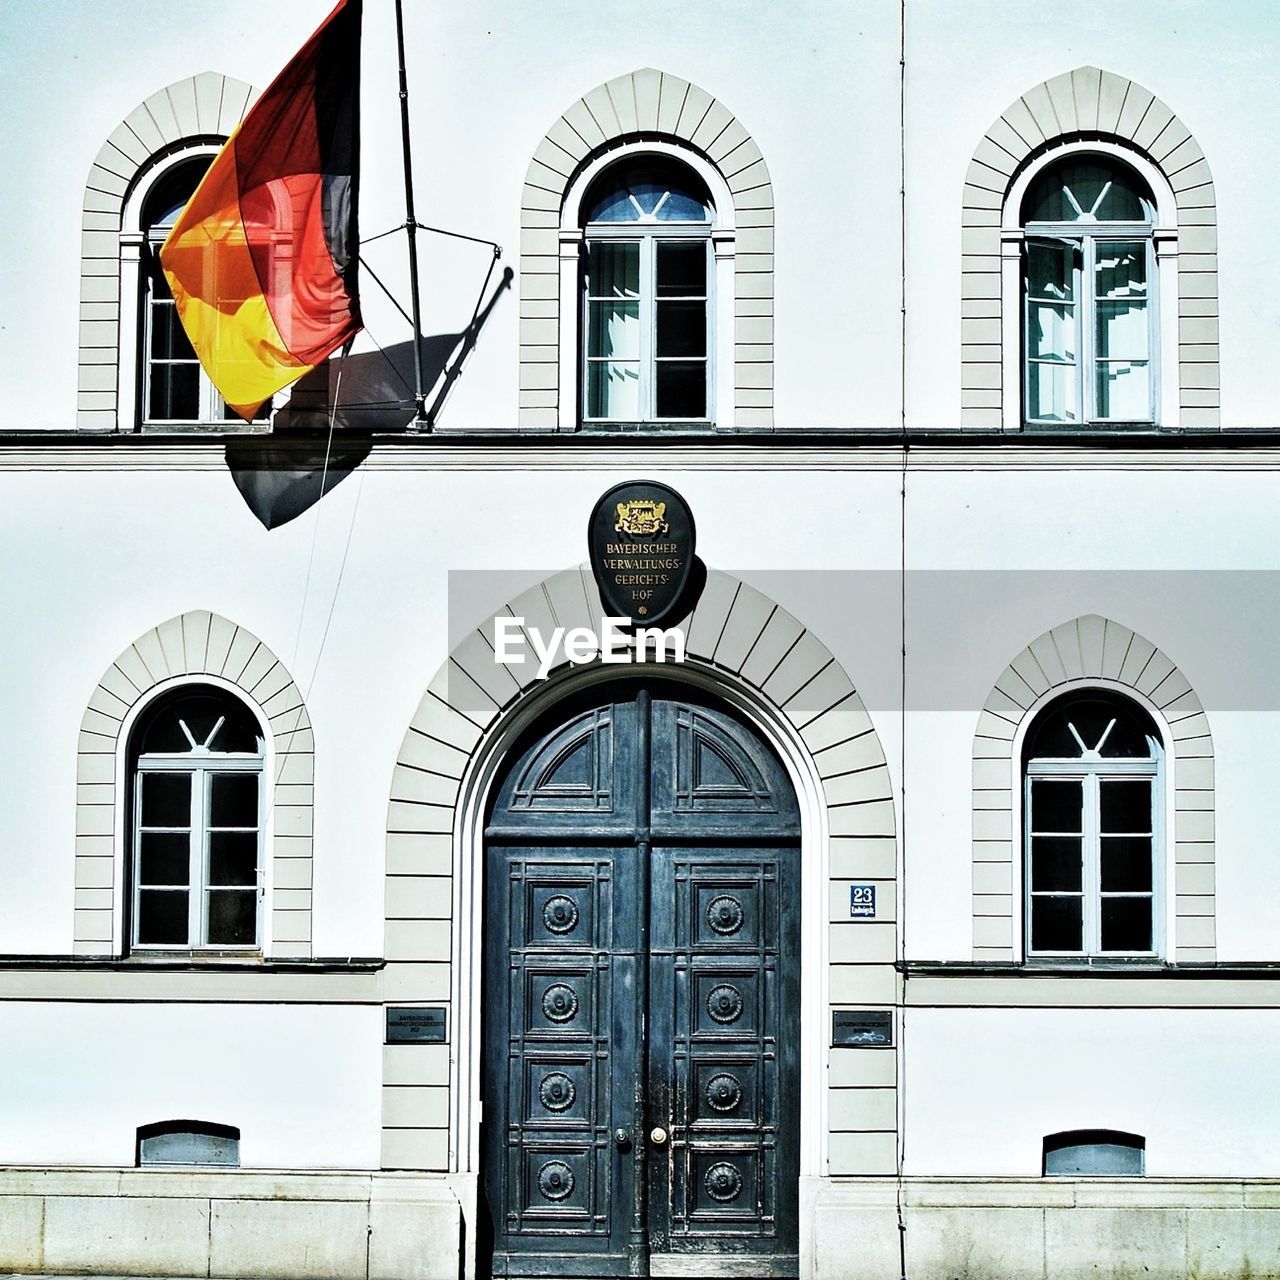 German flag at building entrance